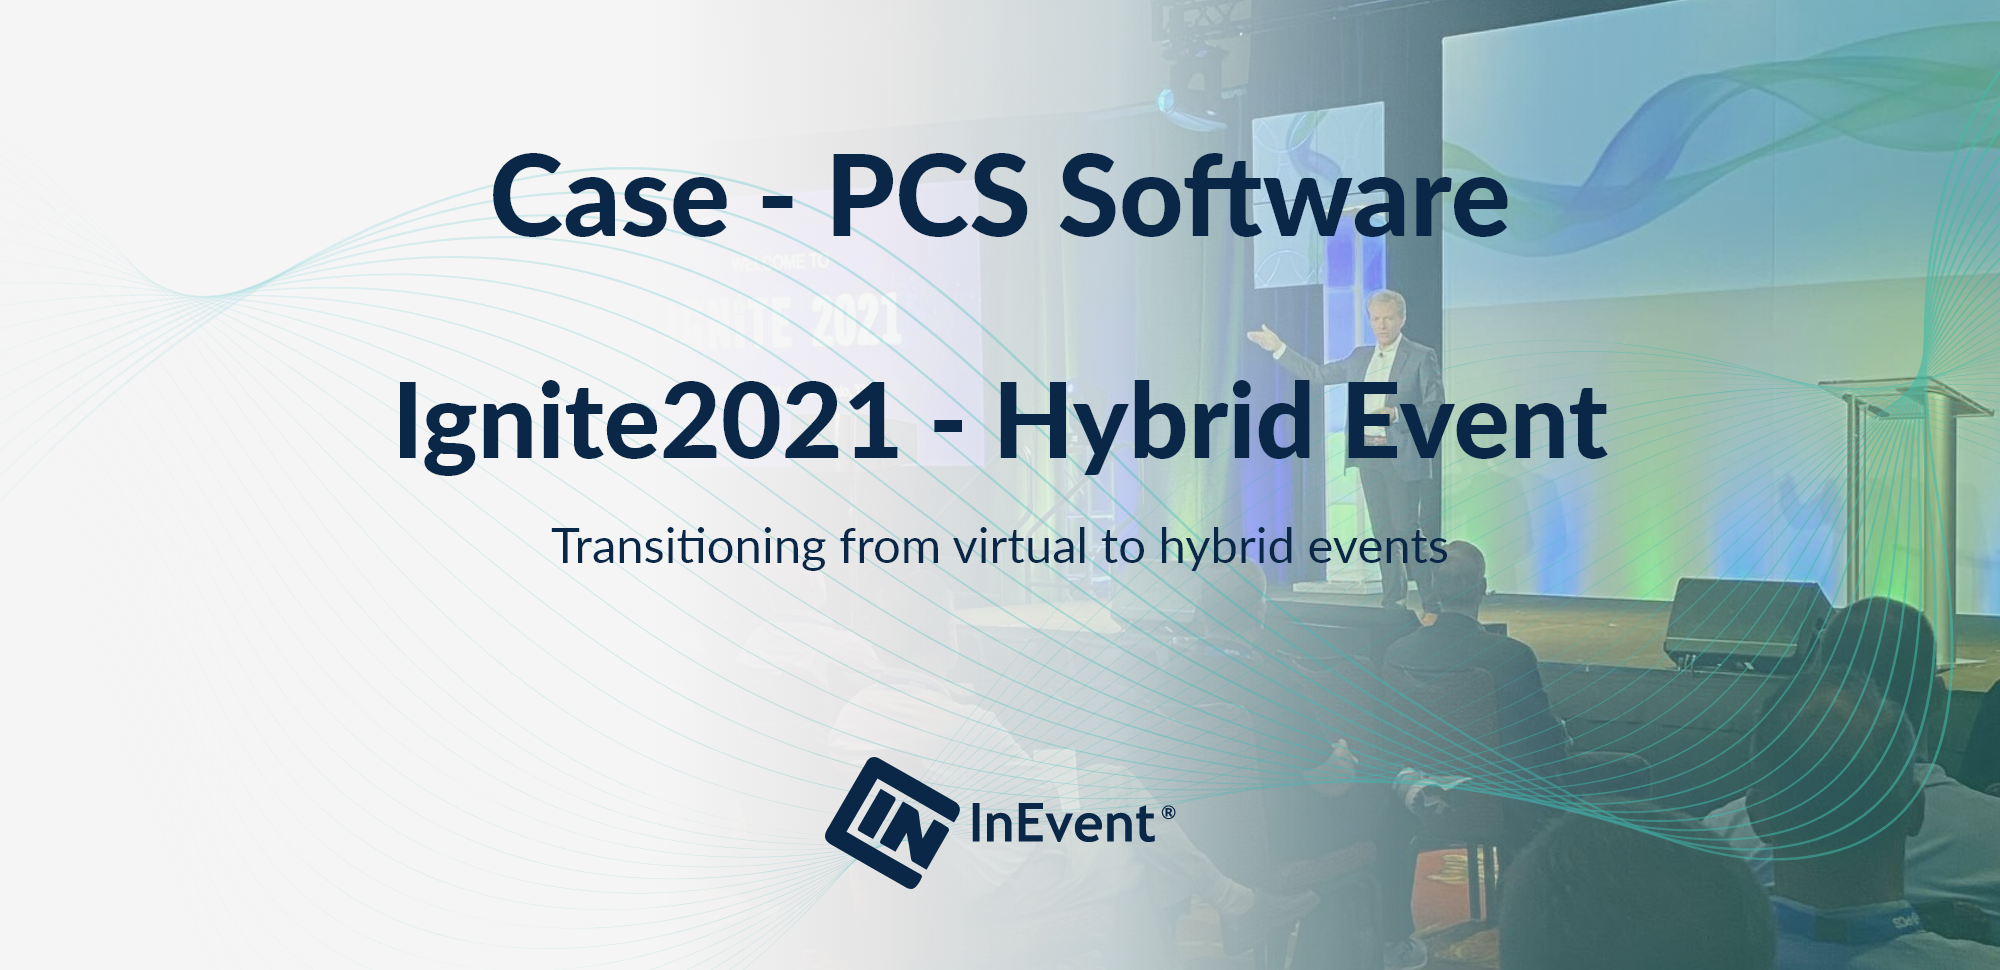 Evento híbrido Ignite2021 de PCS Software